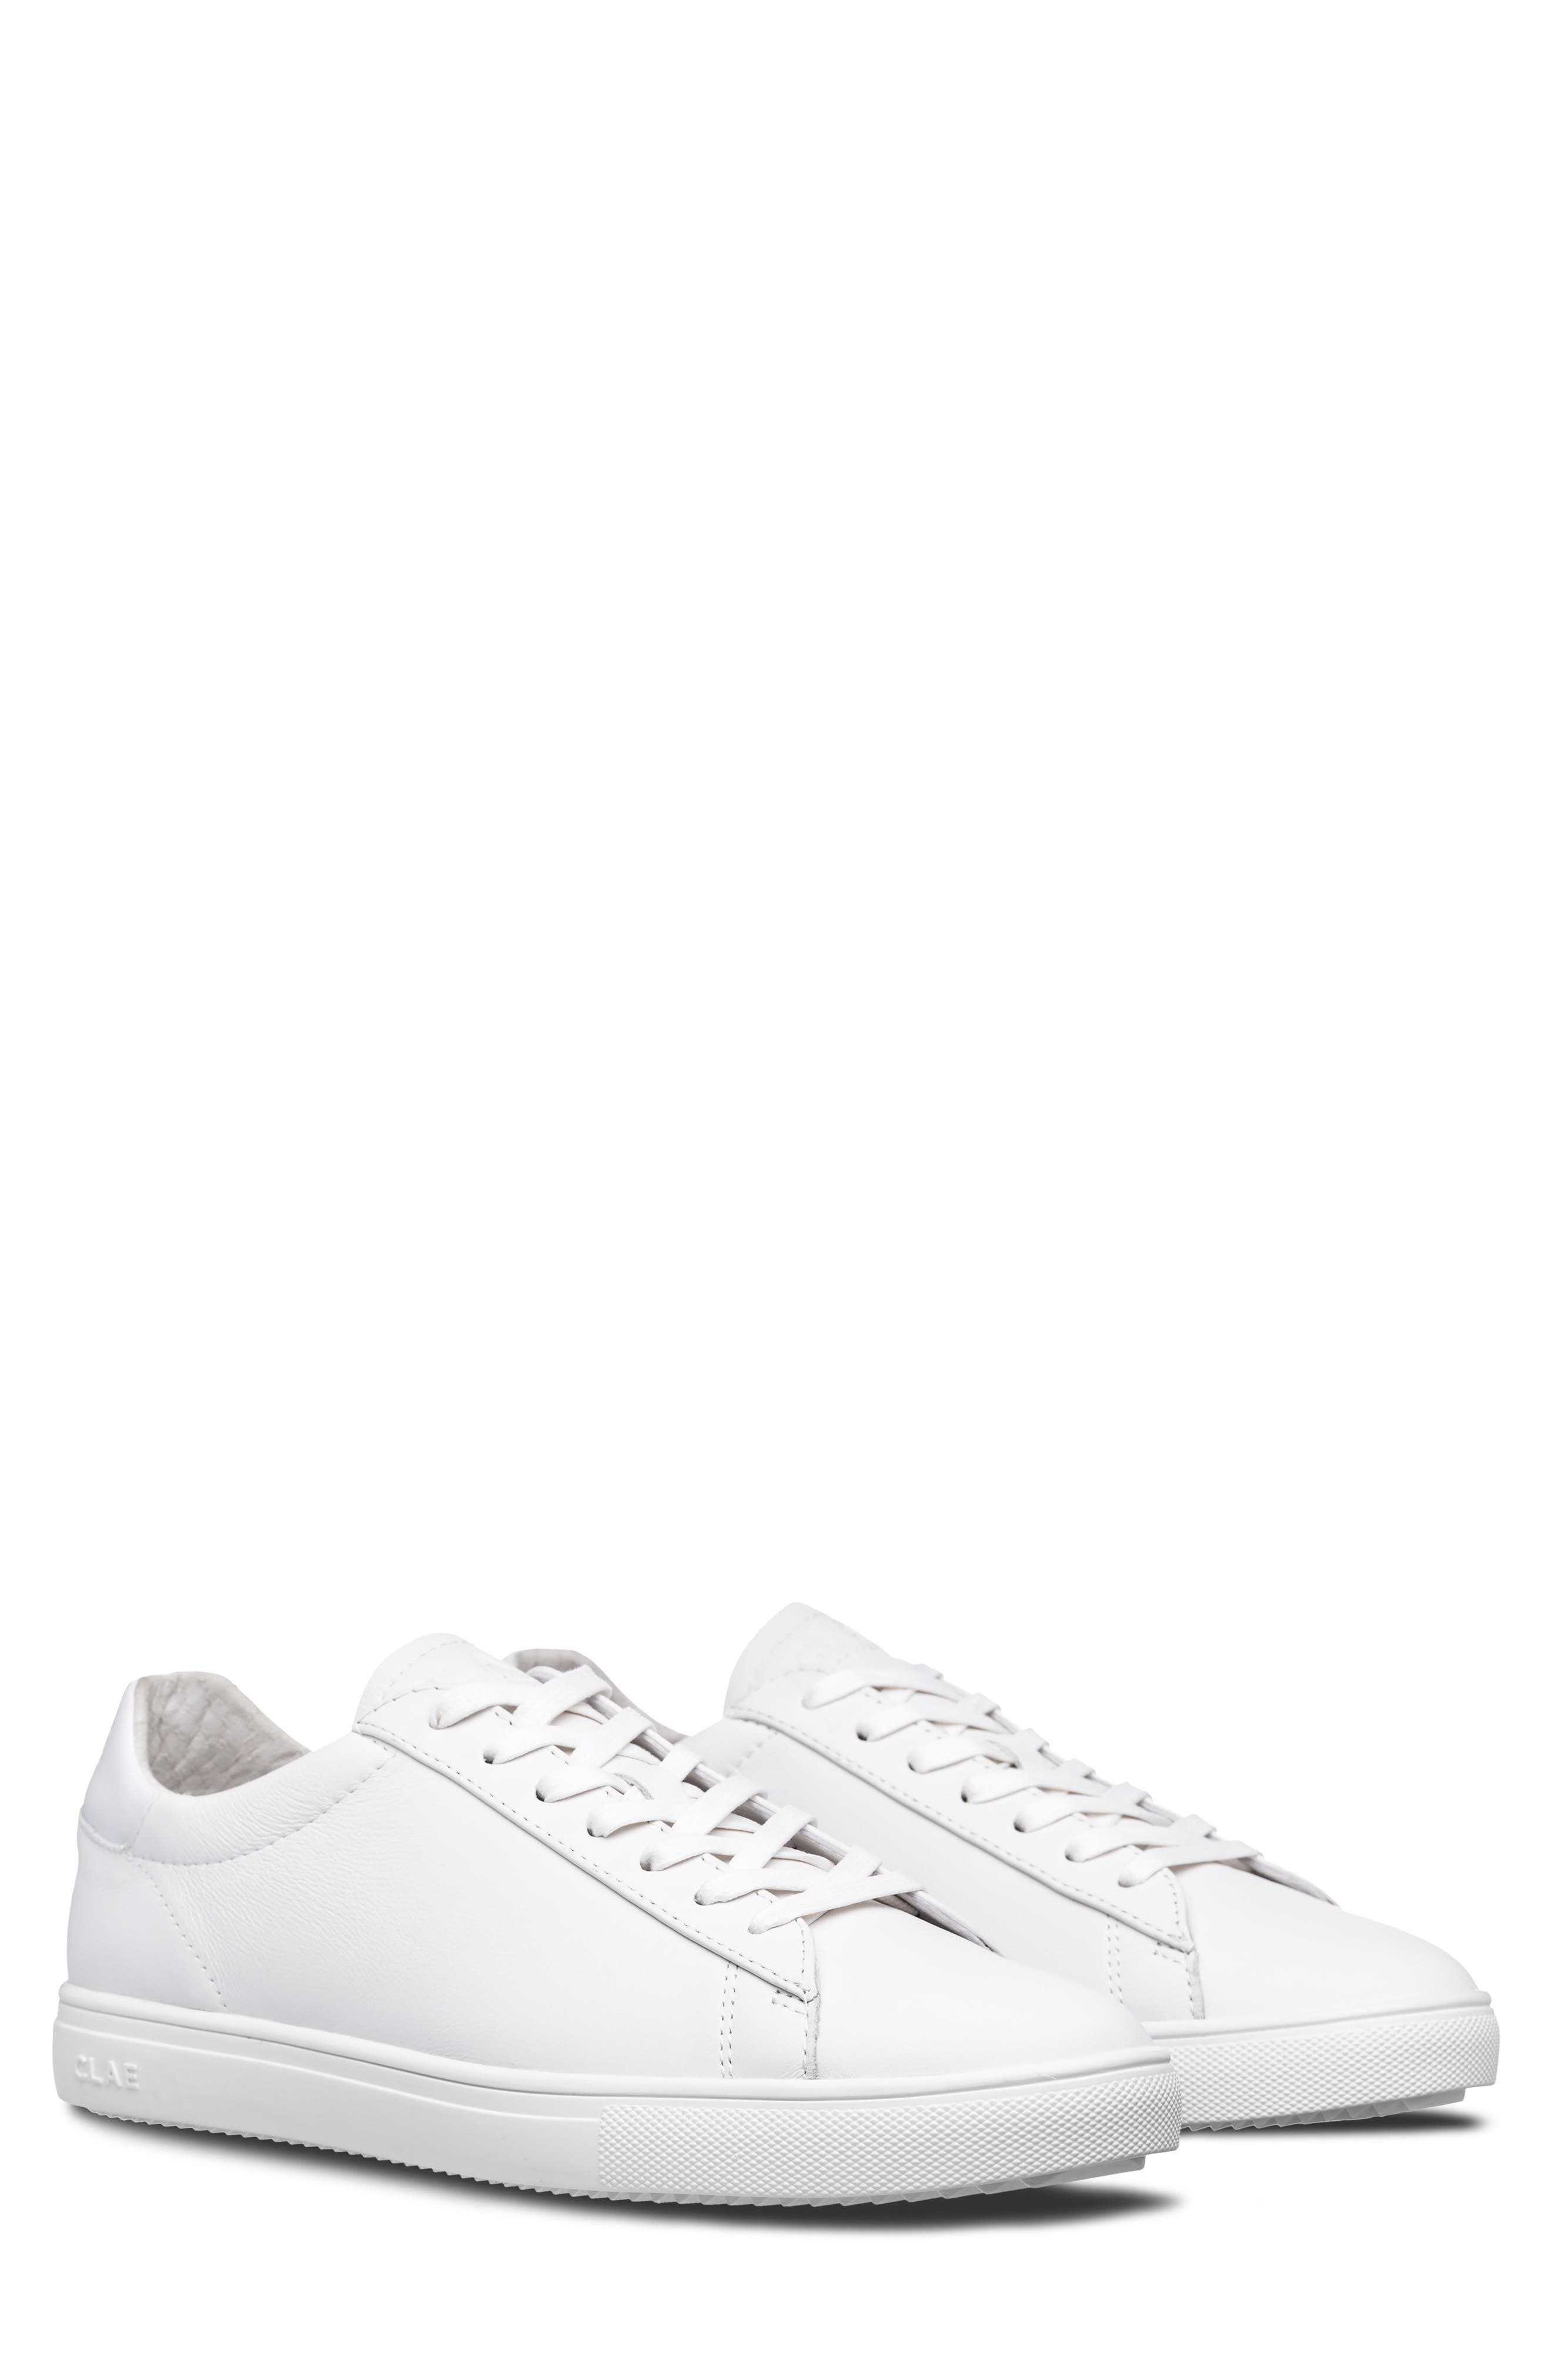 Men's All-White Sneakers | Nordstrom